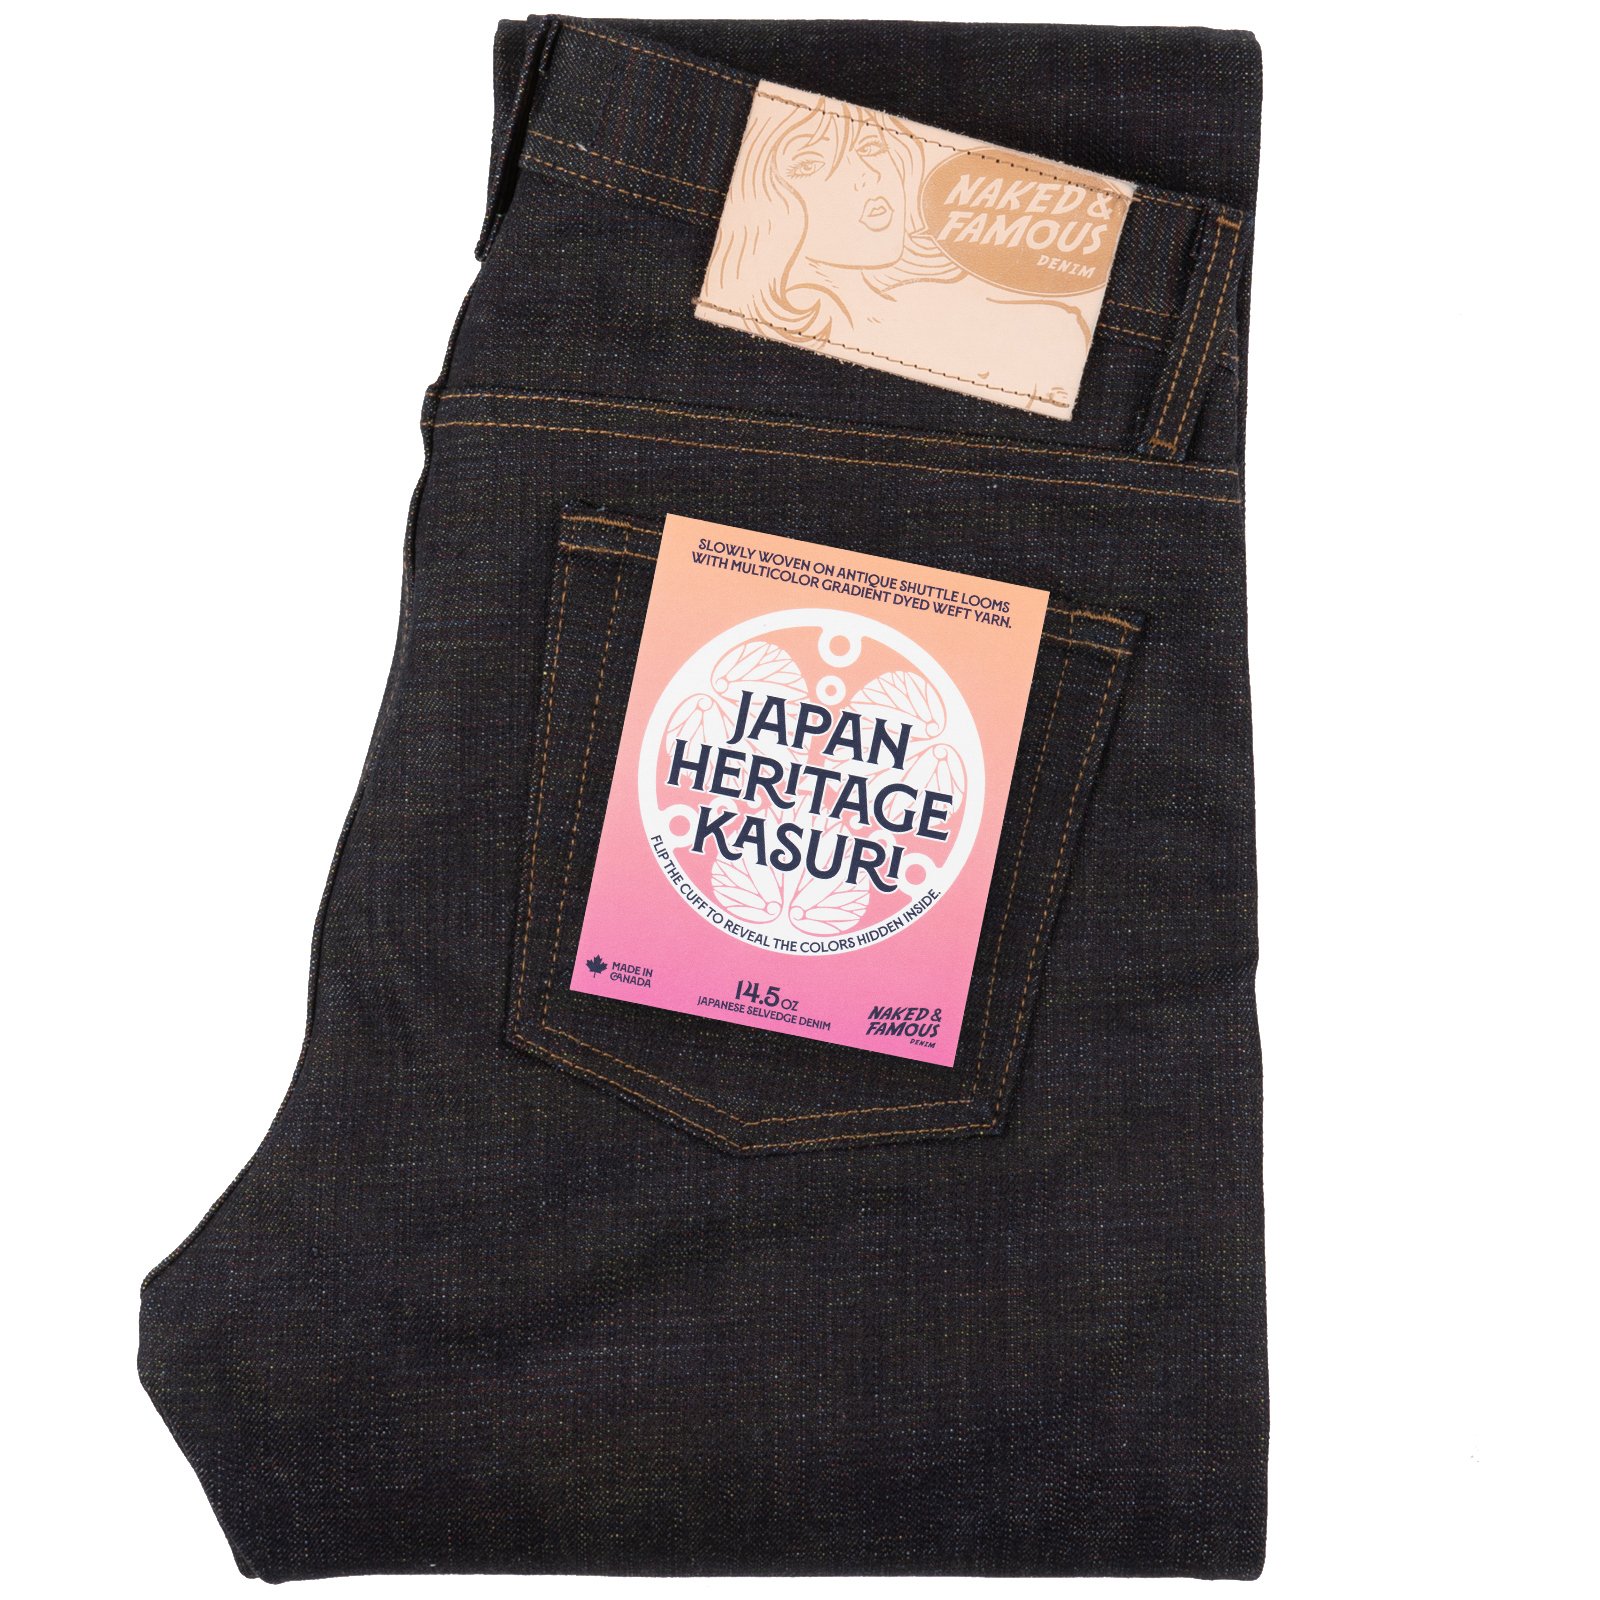  Japan Heritage Kasuri jeans - folded 